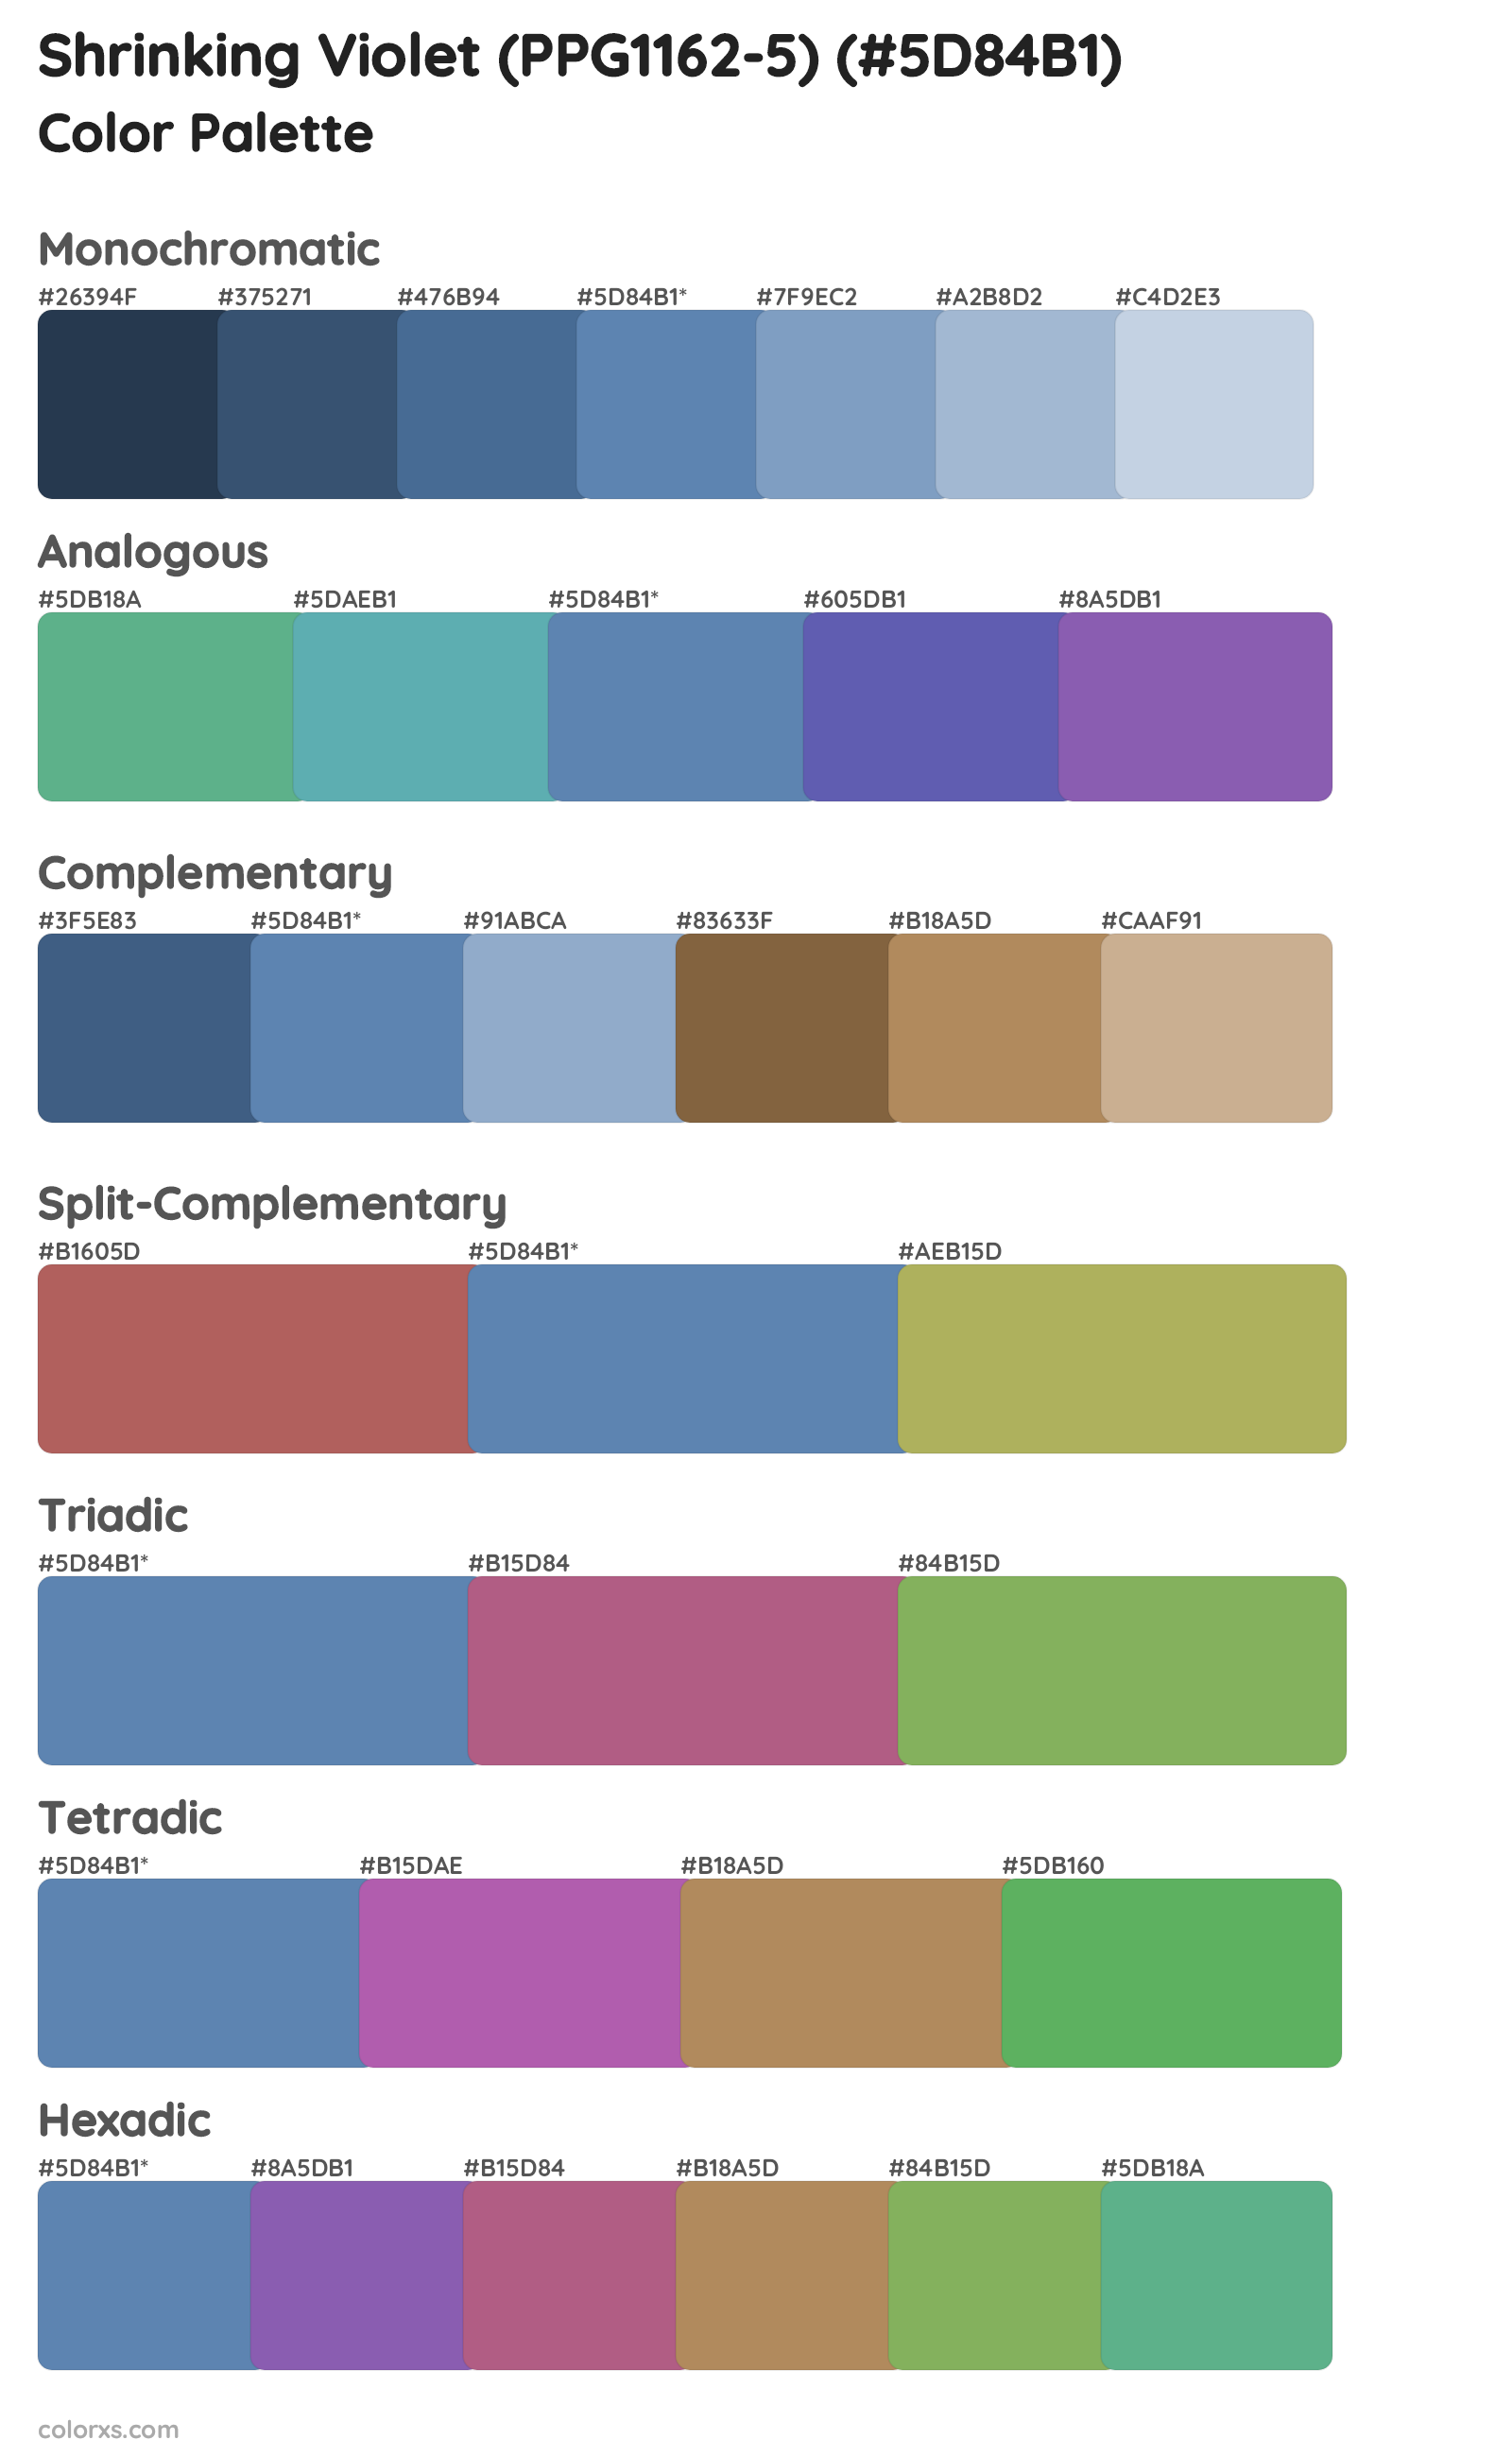 Shrinking Violet (PPG1162-5) Color Scheme Palettes